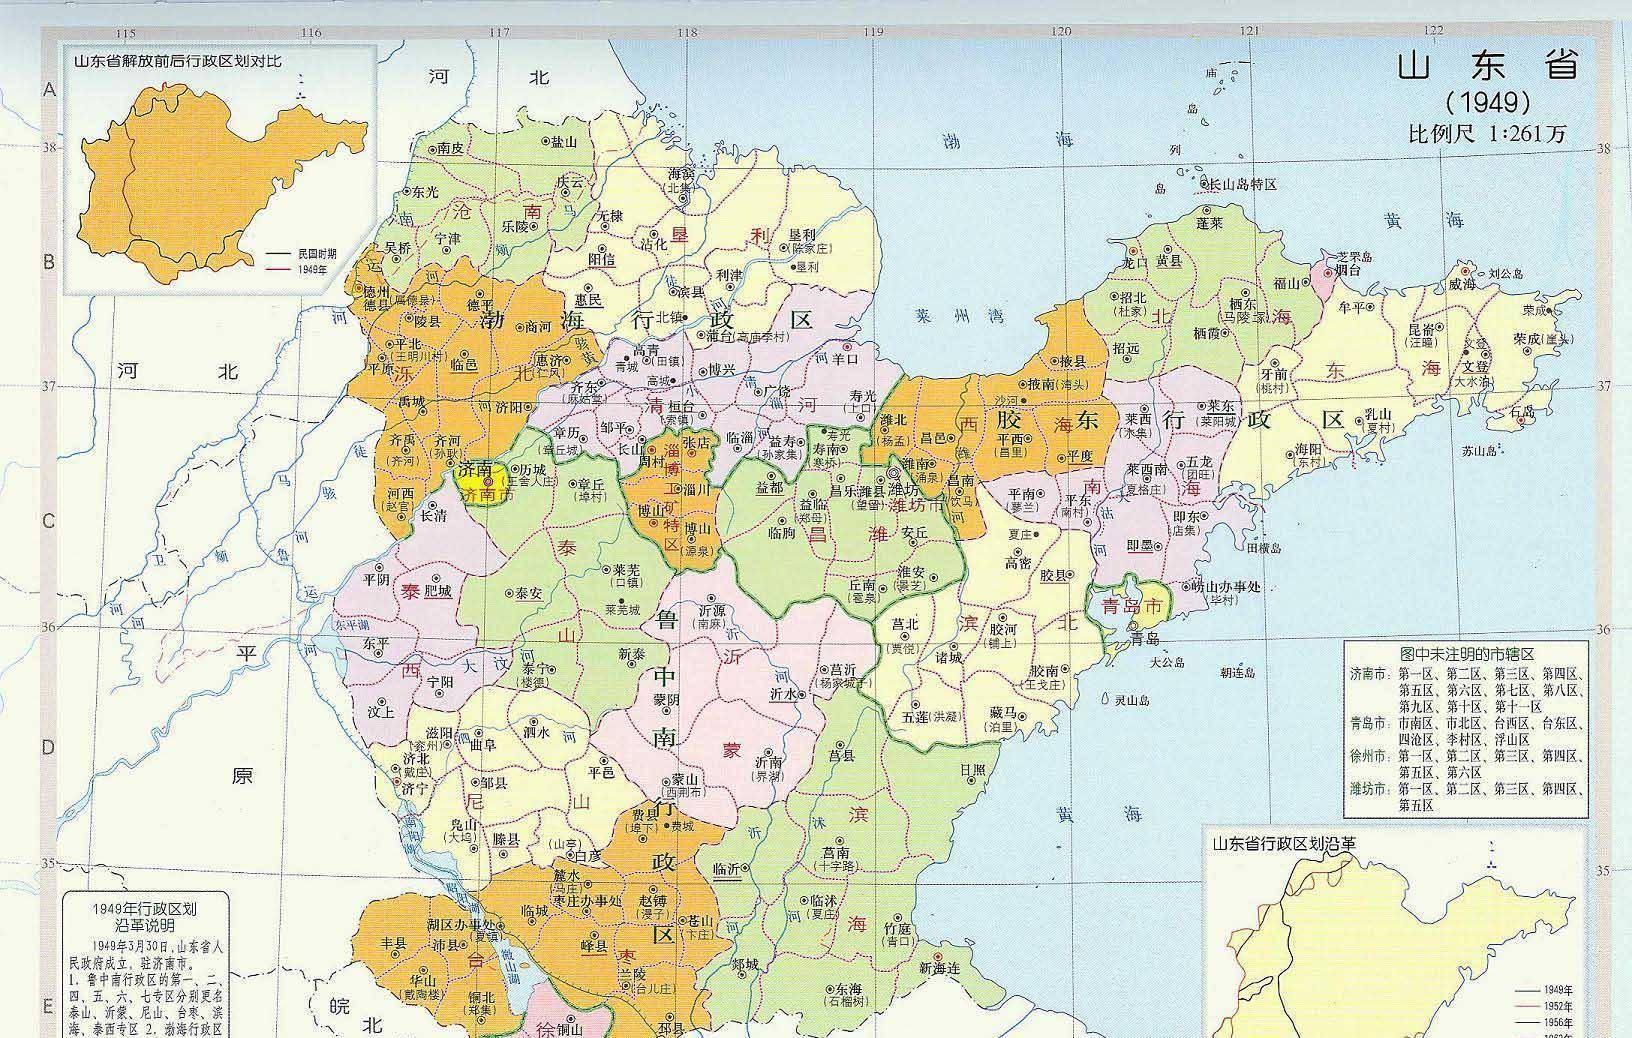 新中国成立初期,山东省行政区划较为复杂,有四个省辖市,一个省直辖